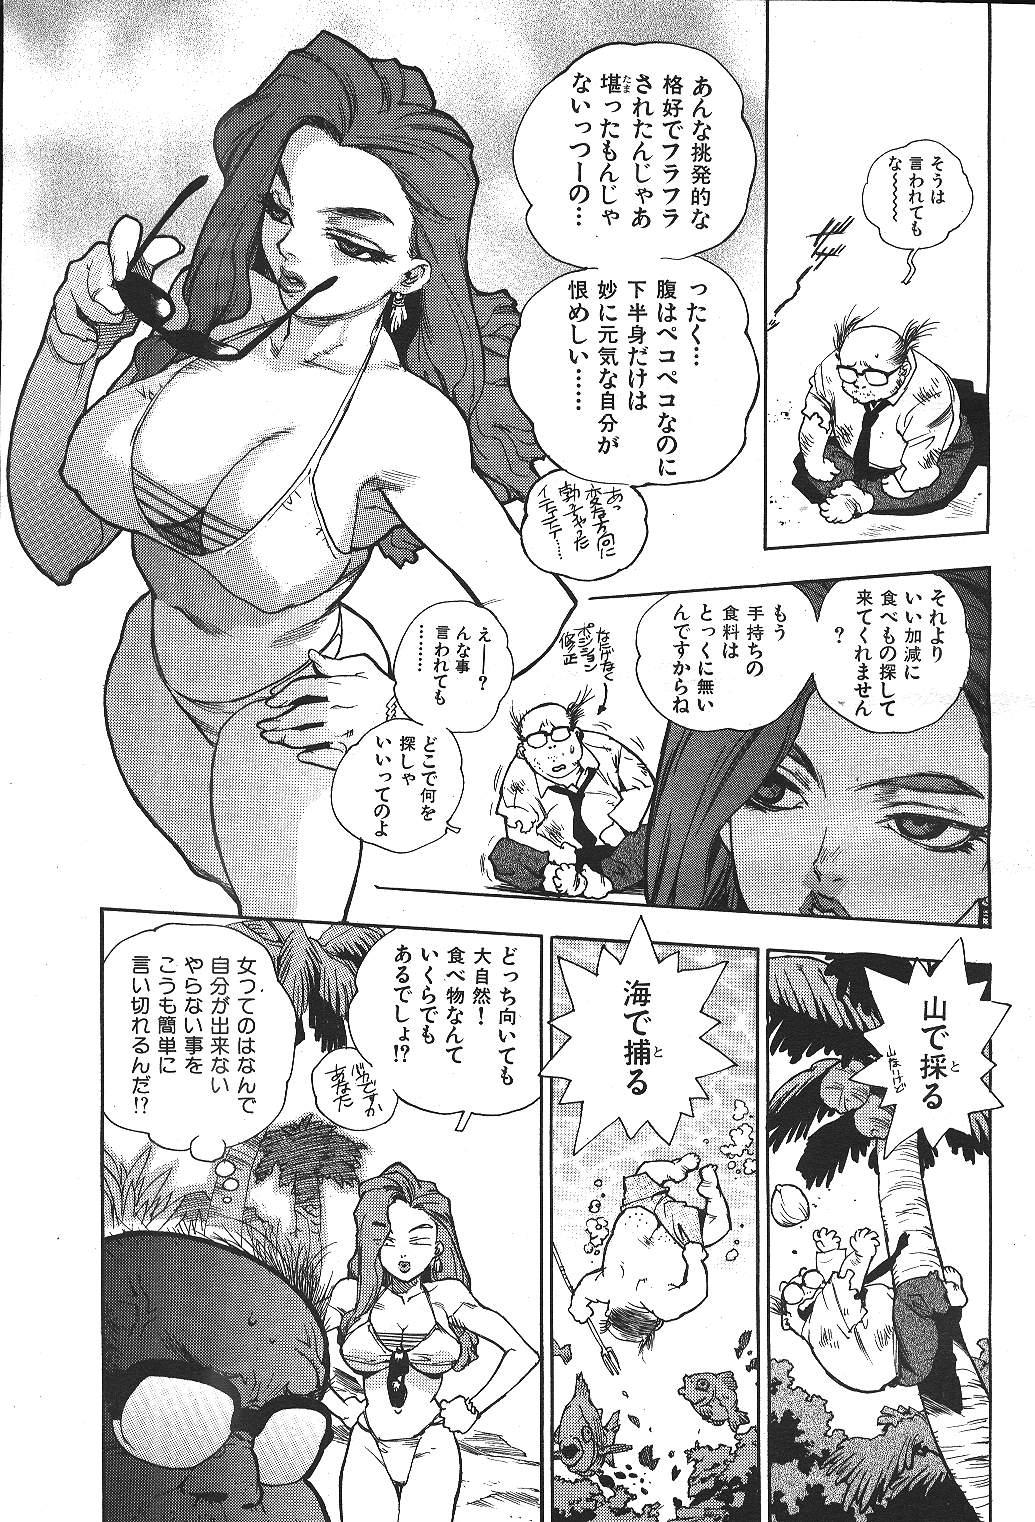 COMIC GEKIMAN 2000-07 Vol. 26 7